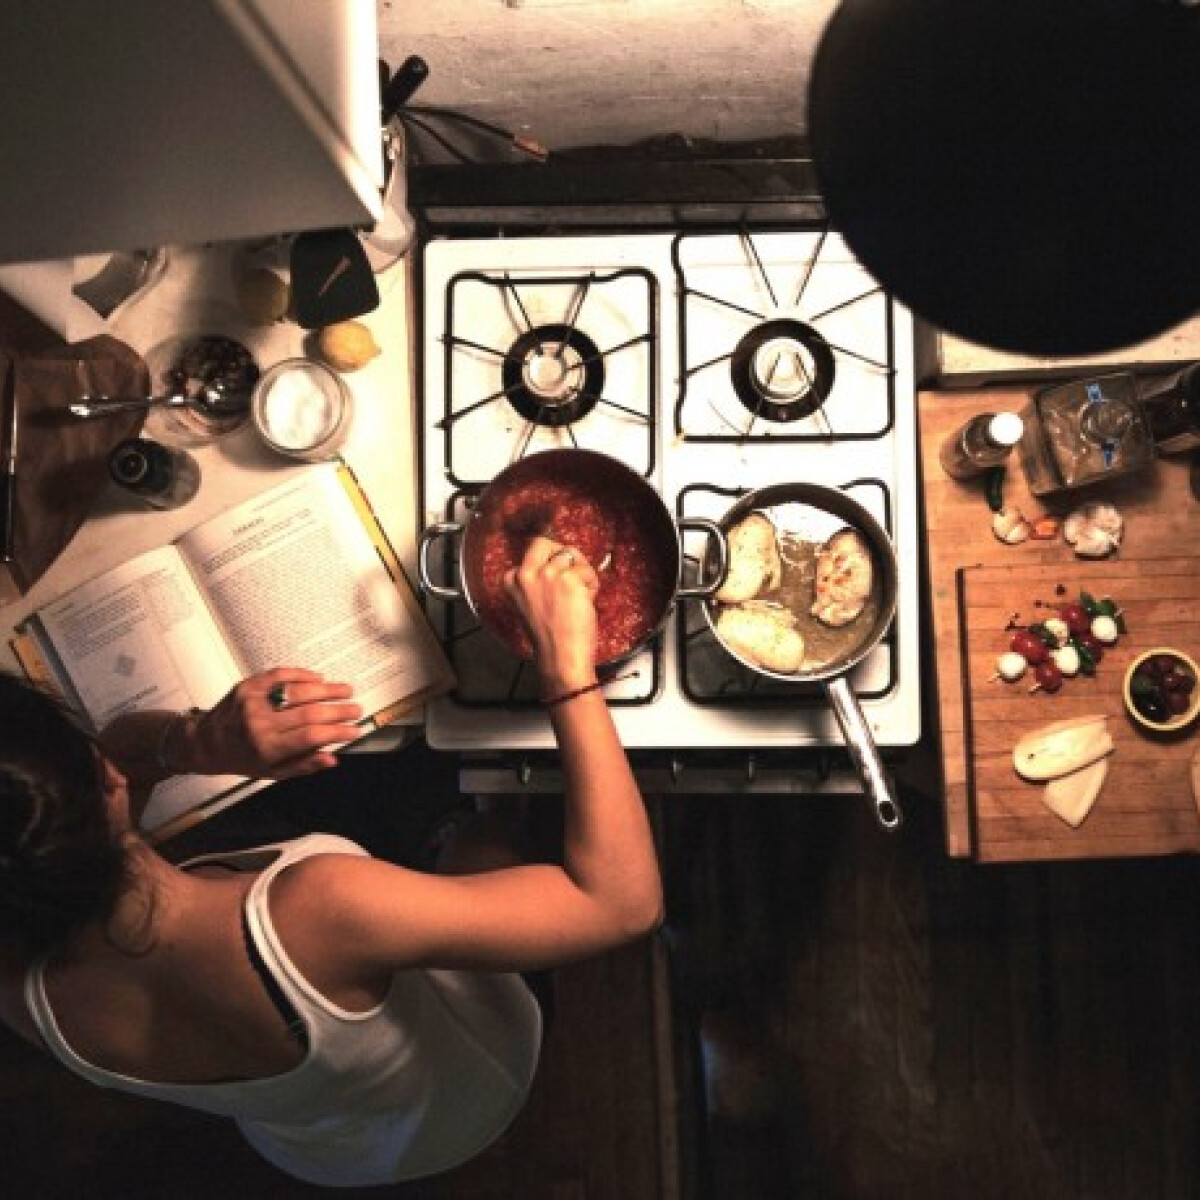 Ezt az 5 dolgot csináld idén másképp a konyhában